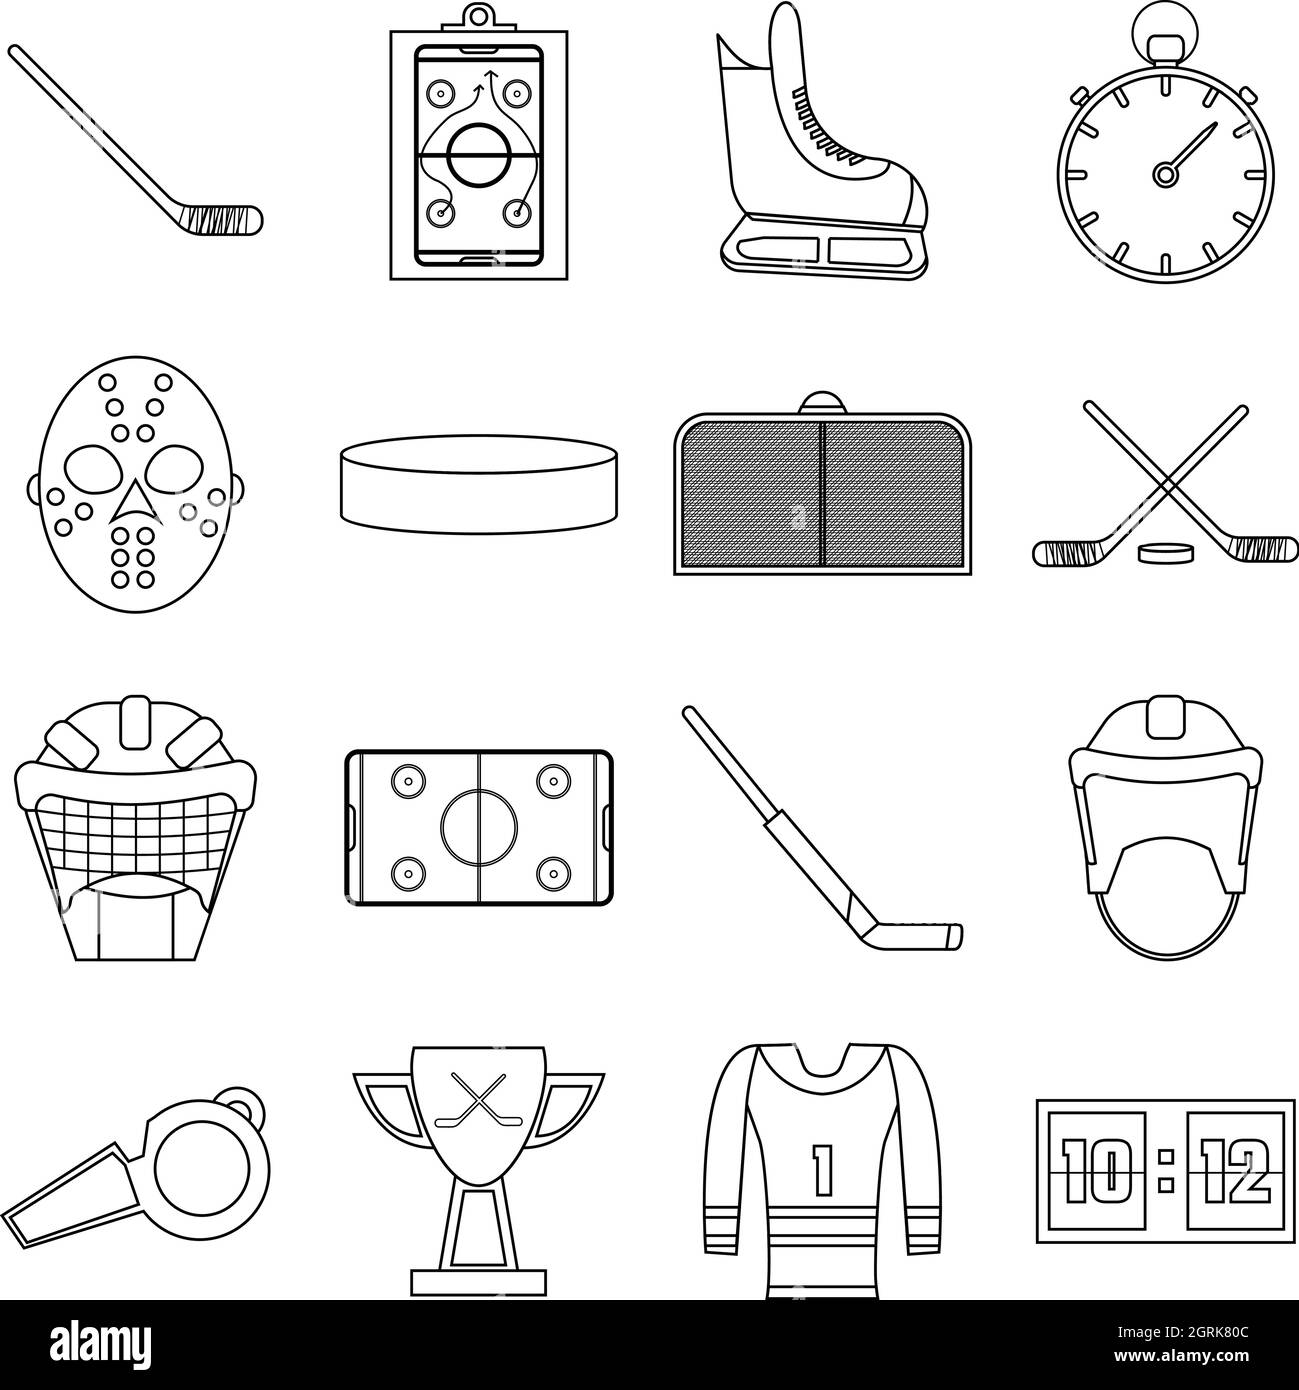 Eishockey Artikel Icons Set, Umriss-Stil Stock Vektor